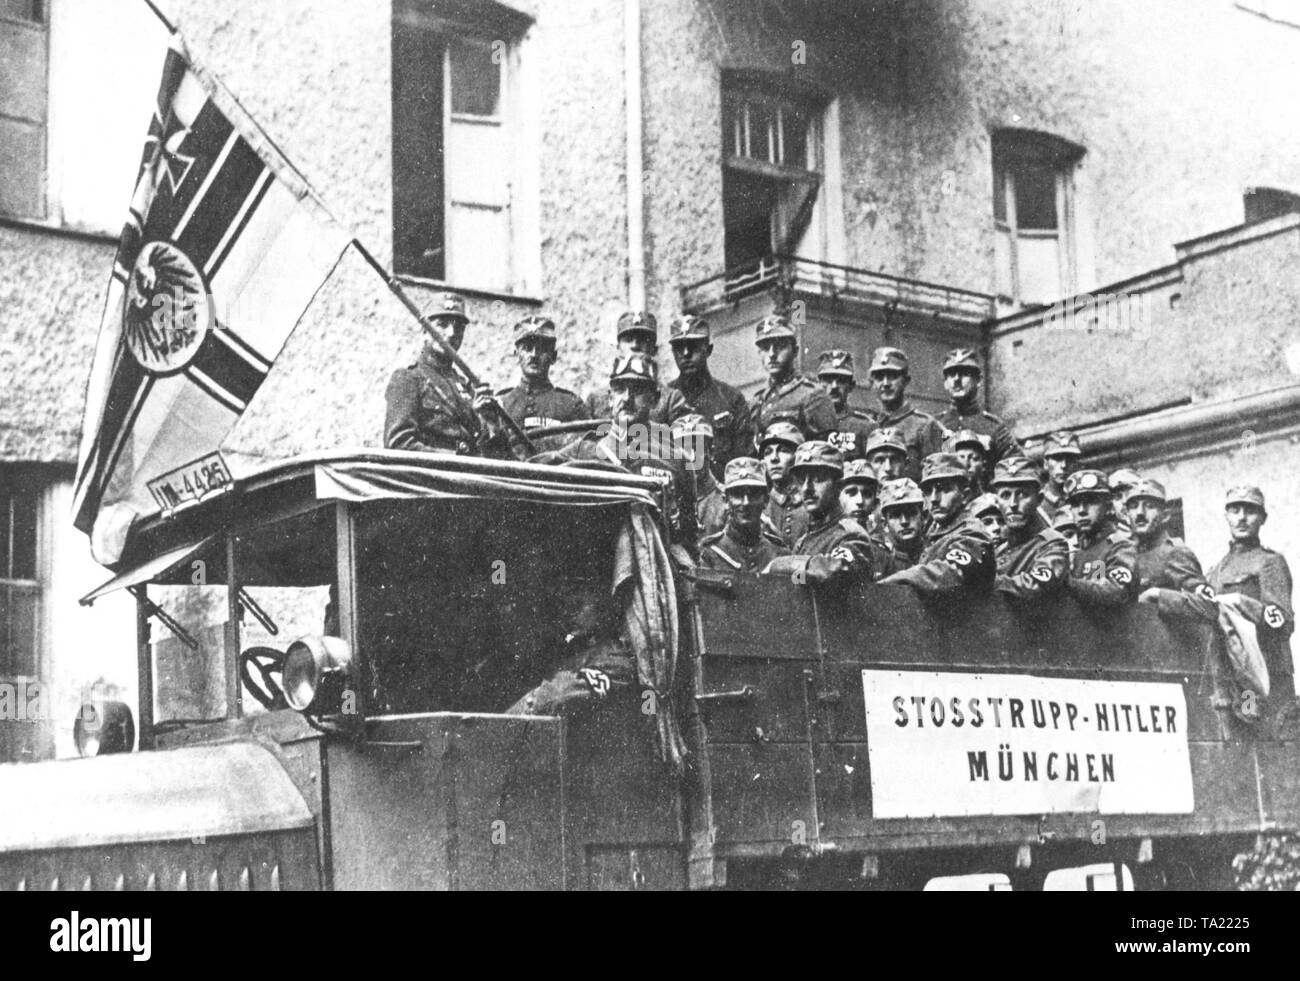 Einer der ersten SA Divisionen im Herbst 1923 in München, die Vorbereitung der Hitler Putsch am 9. November 1923, mit der alten Reichskriegsflagge (Imperial War Flag) aus der Zeit vor 1918. Stockfoto